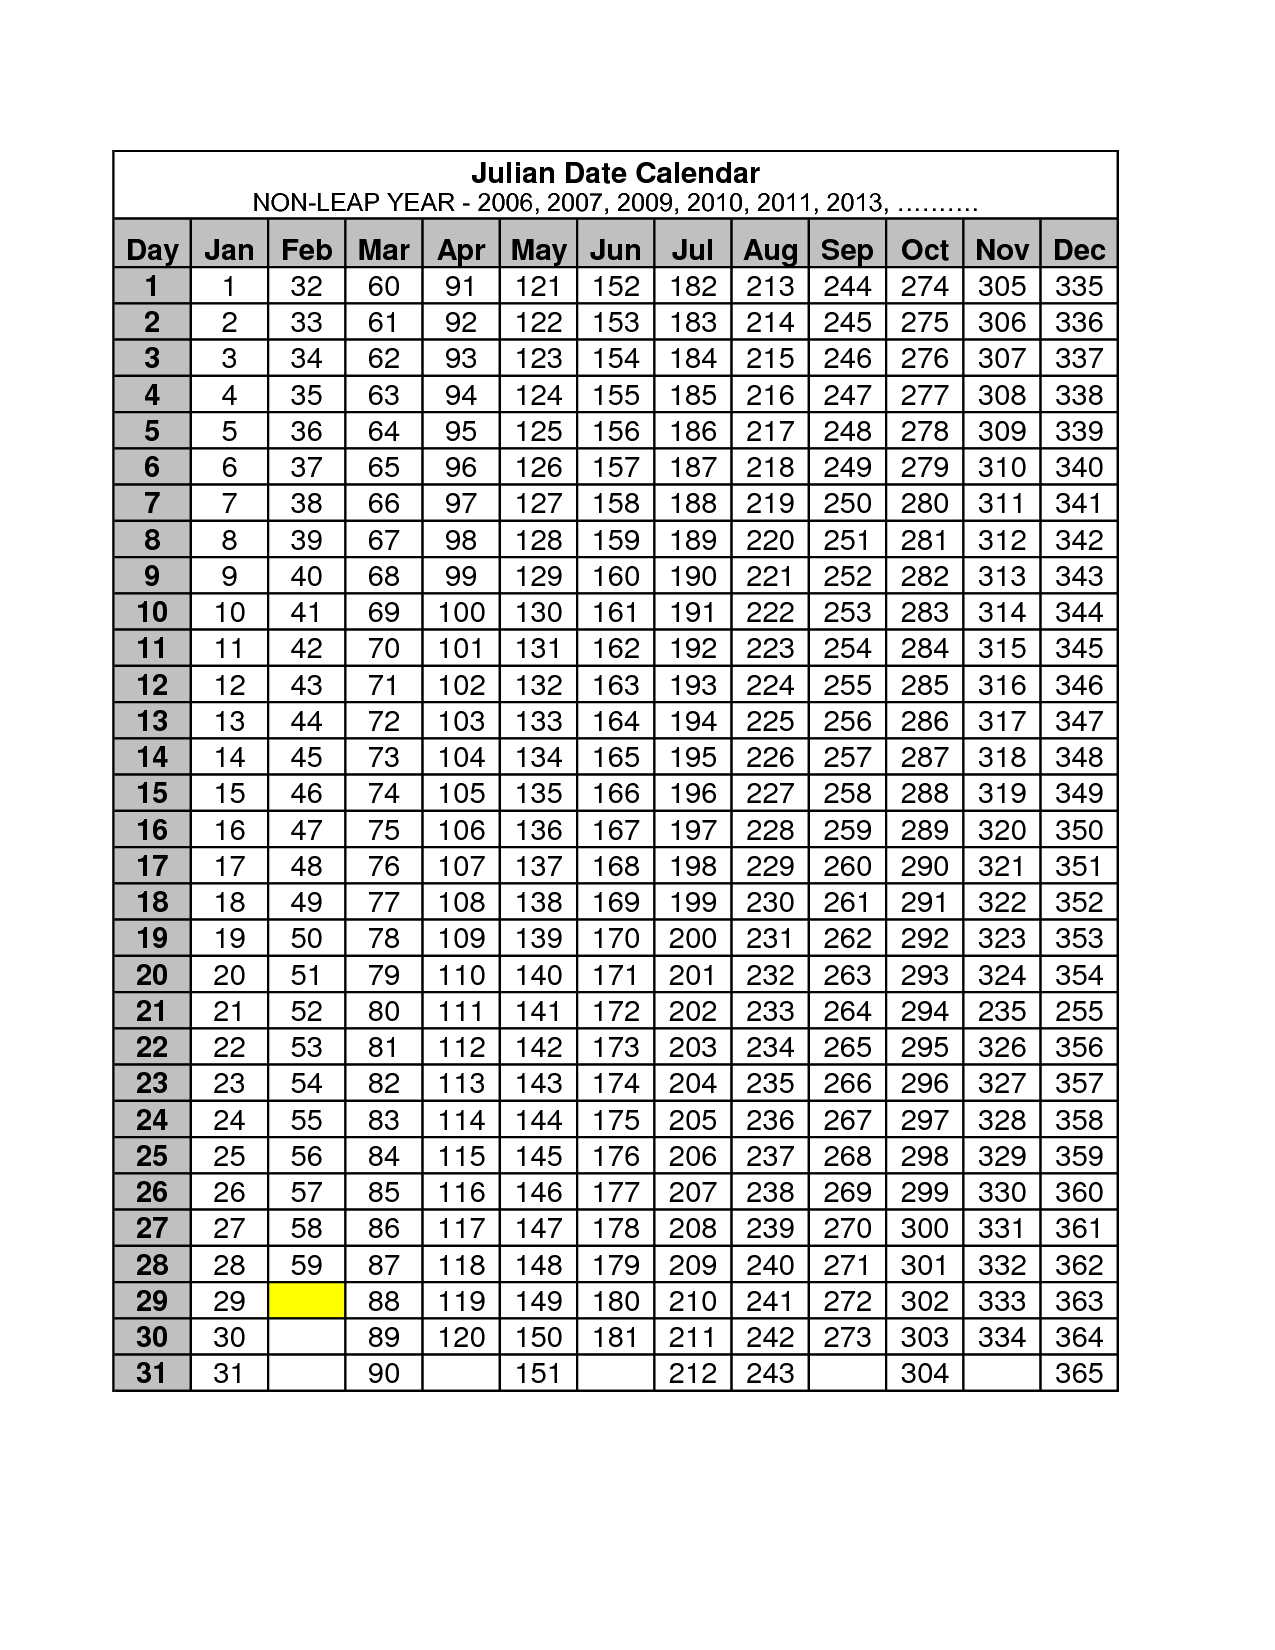 2013 Julian Date Calendar Quadax | Calendar Blank For May 2015 intended for Julian Calendar 2020 - Quadax